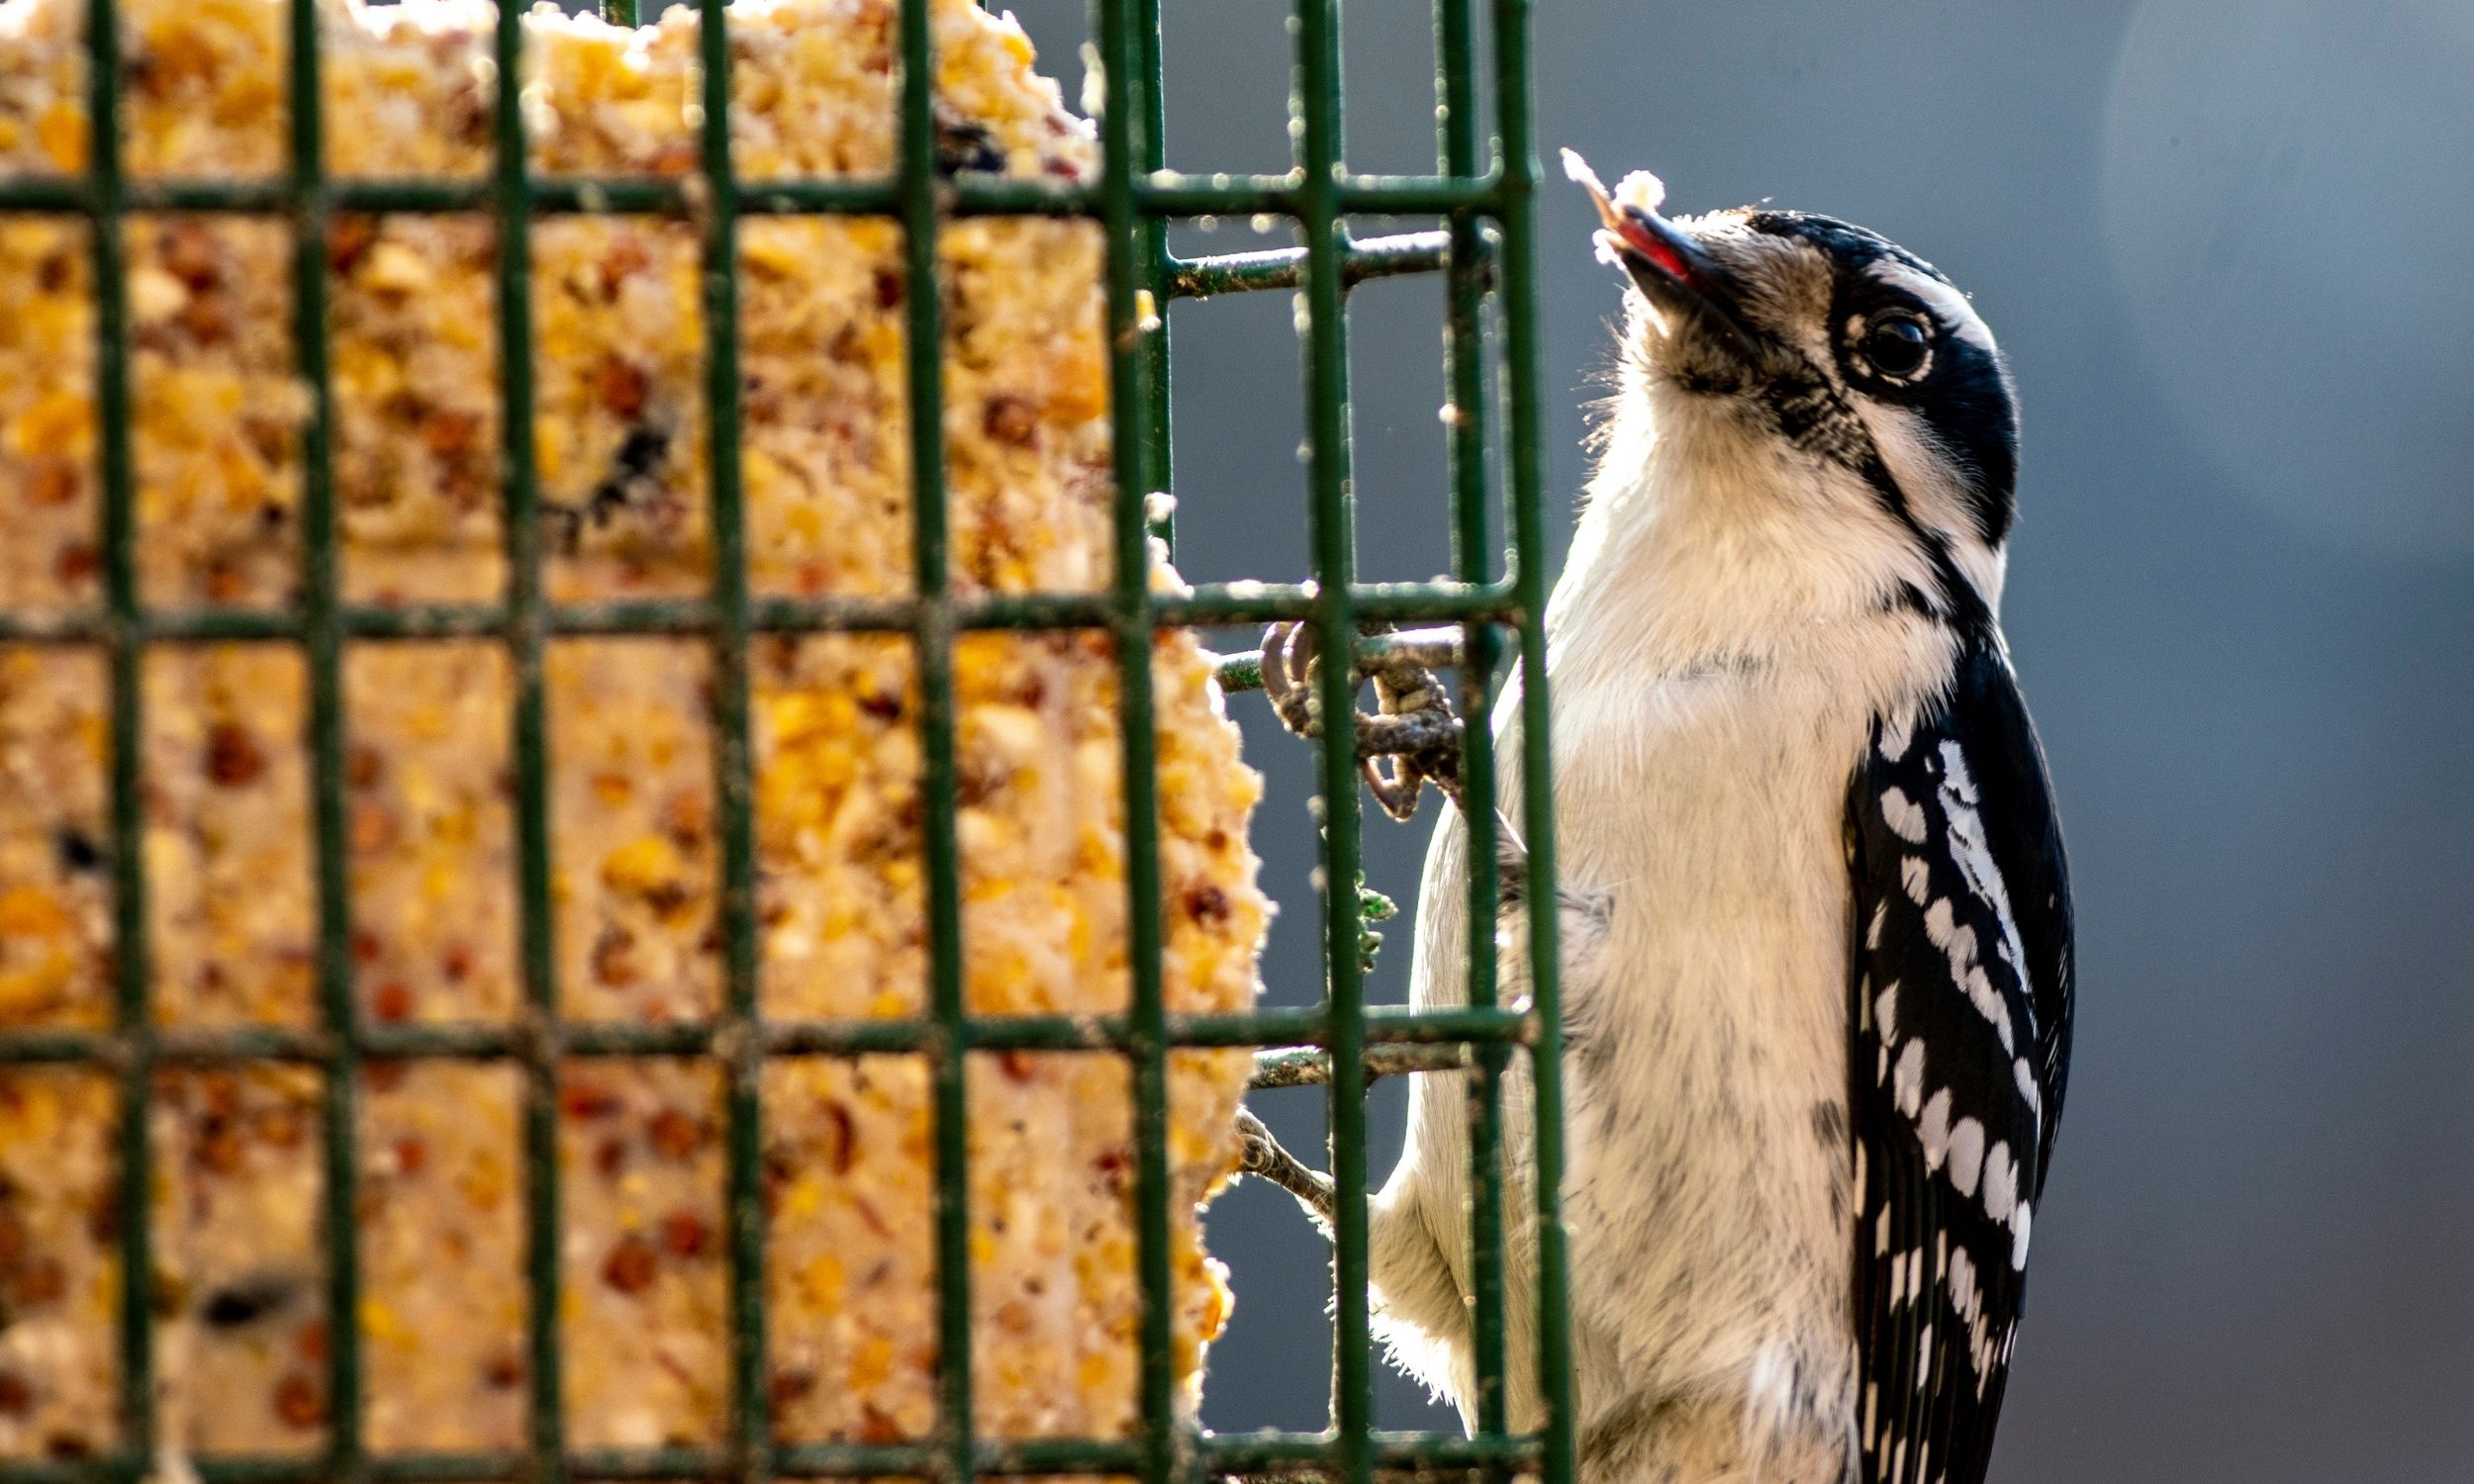 suet bird feeder